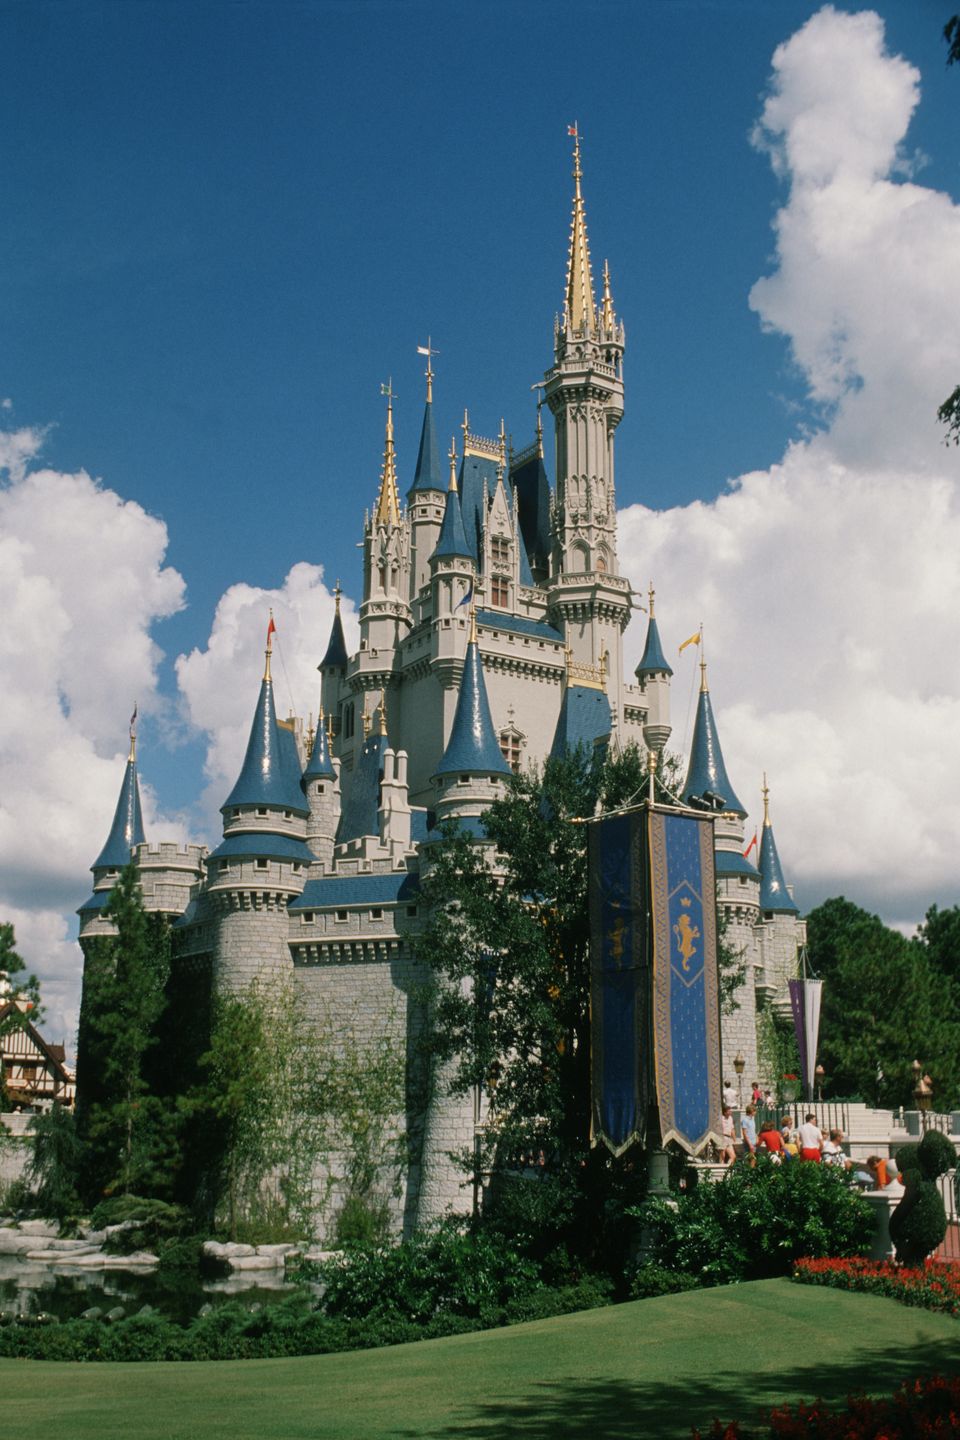 Iconic: Cinderella Castle in Magic Kingdom